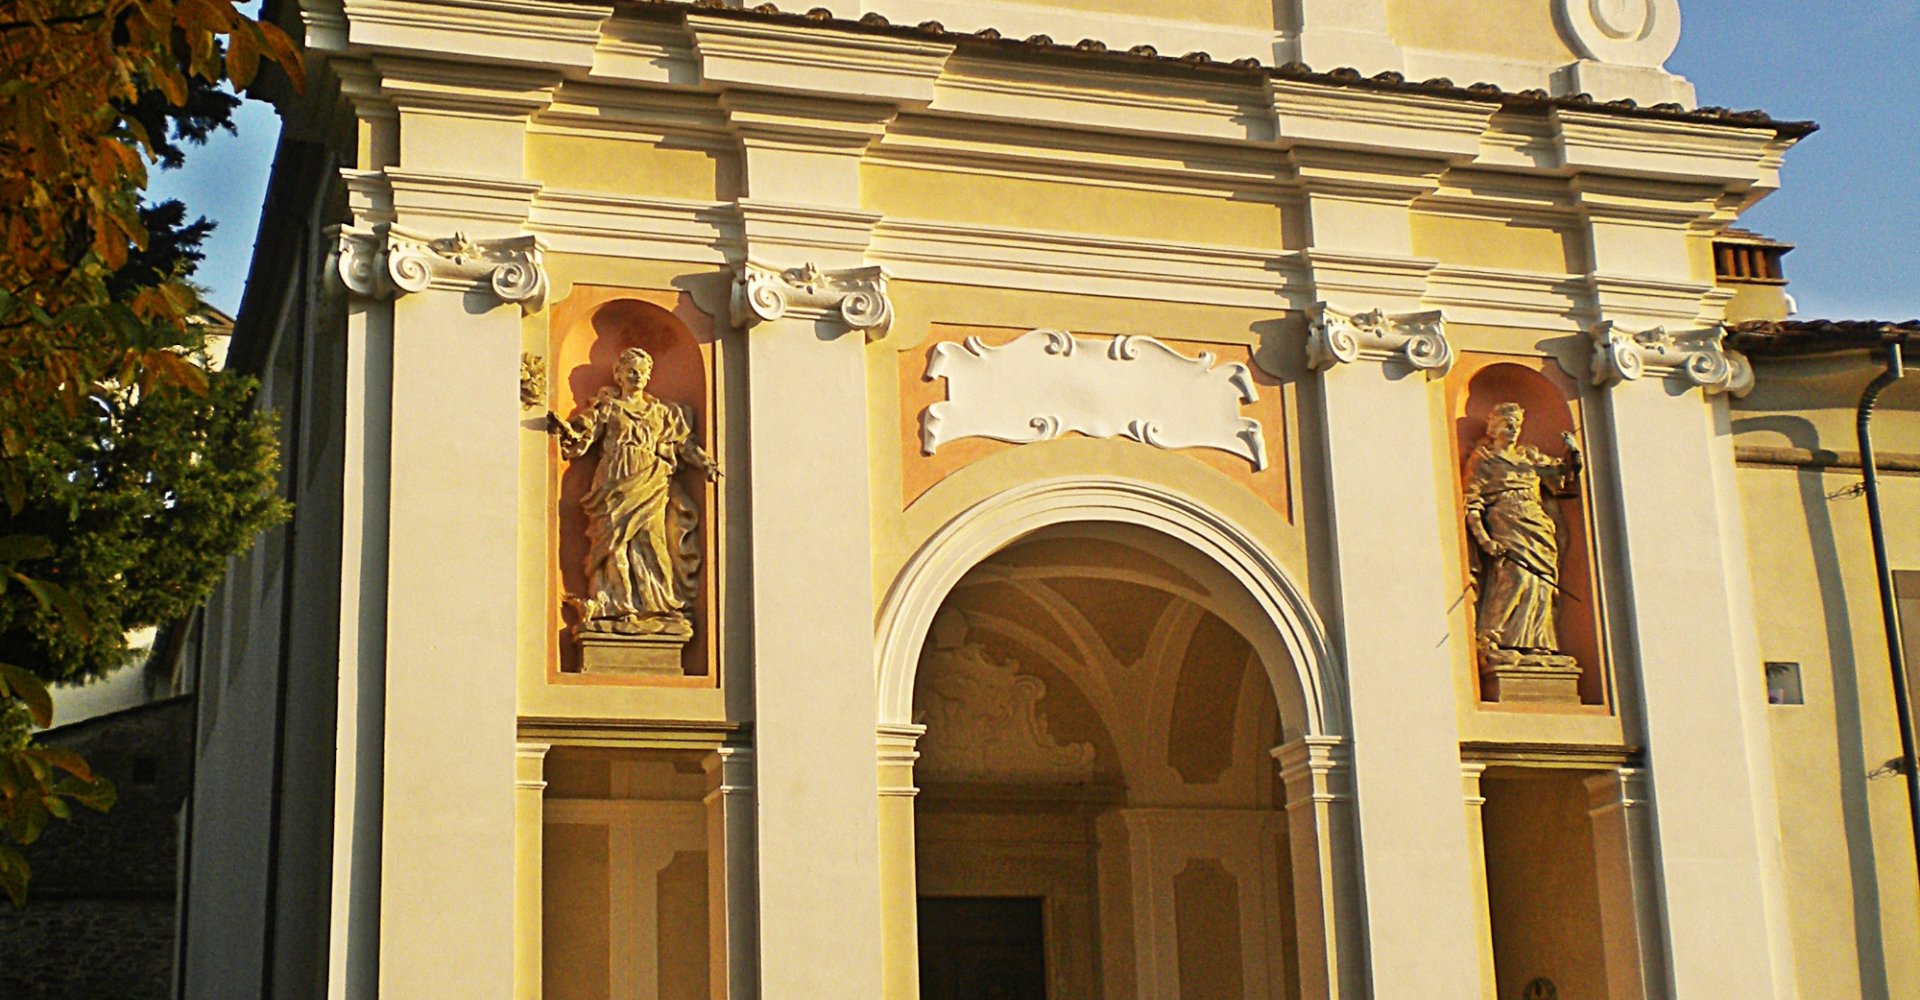 Abadía Santa Maria a Vigesimo, Barberino Mugello